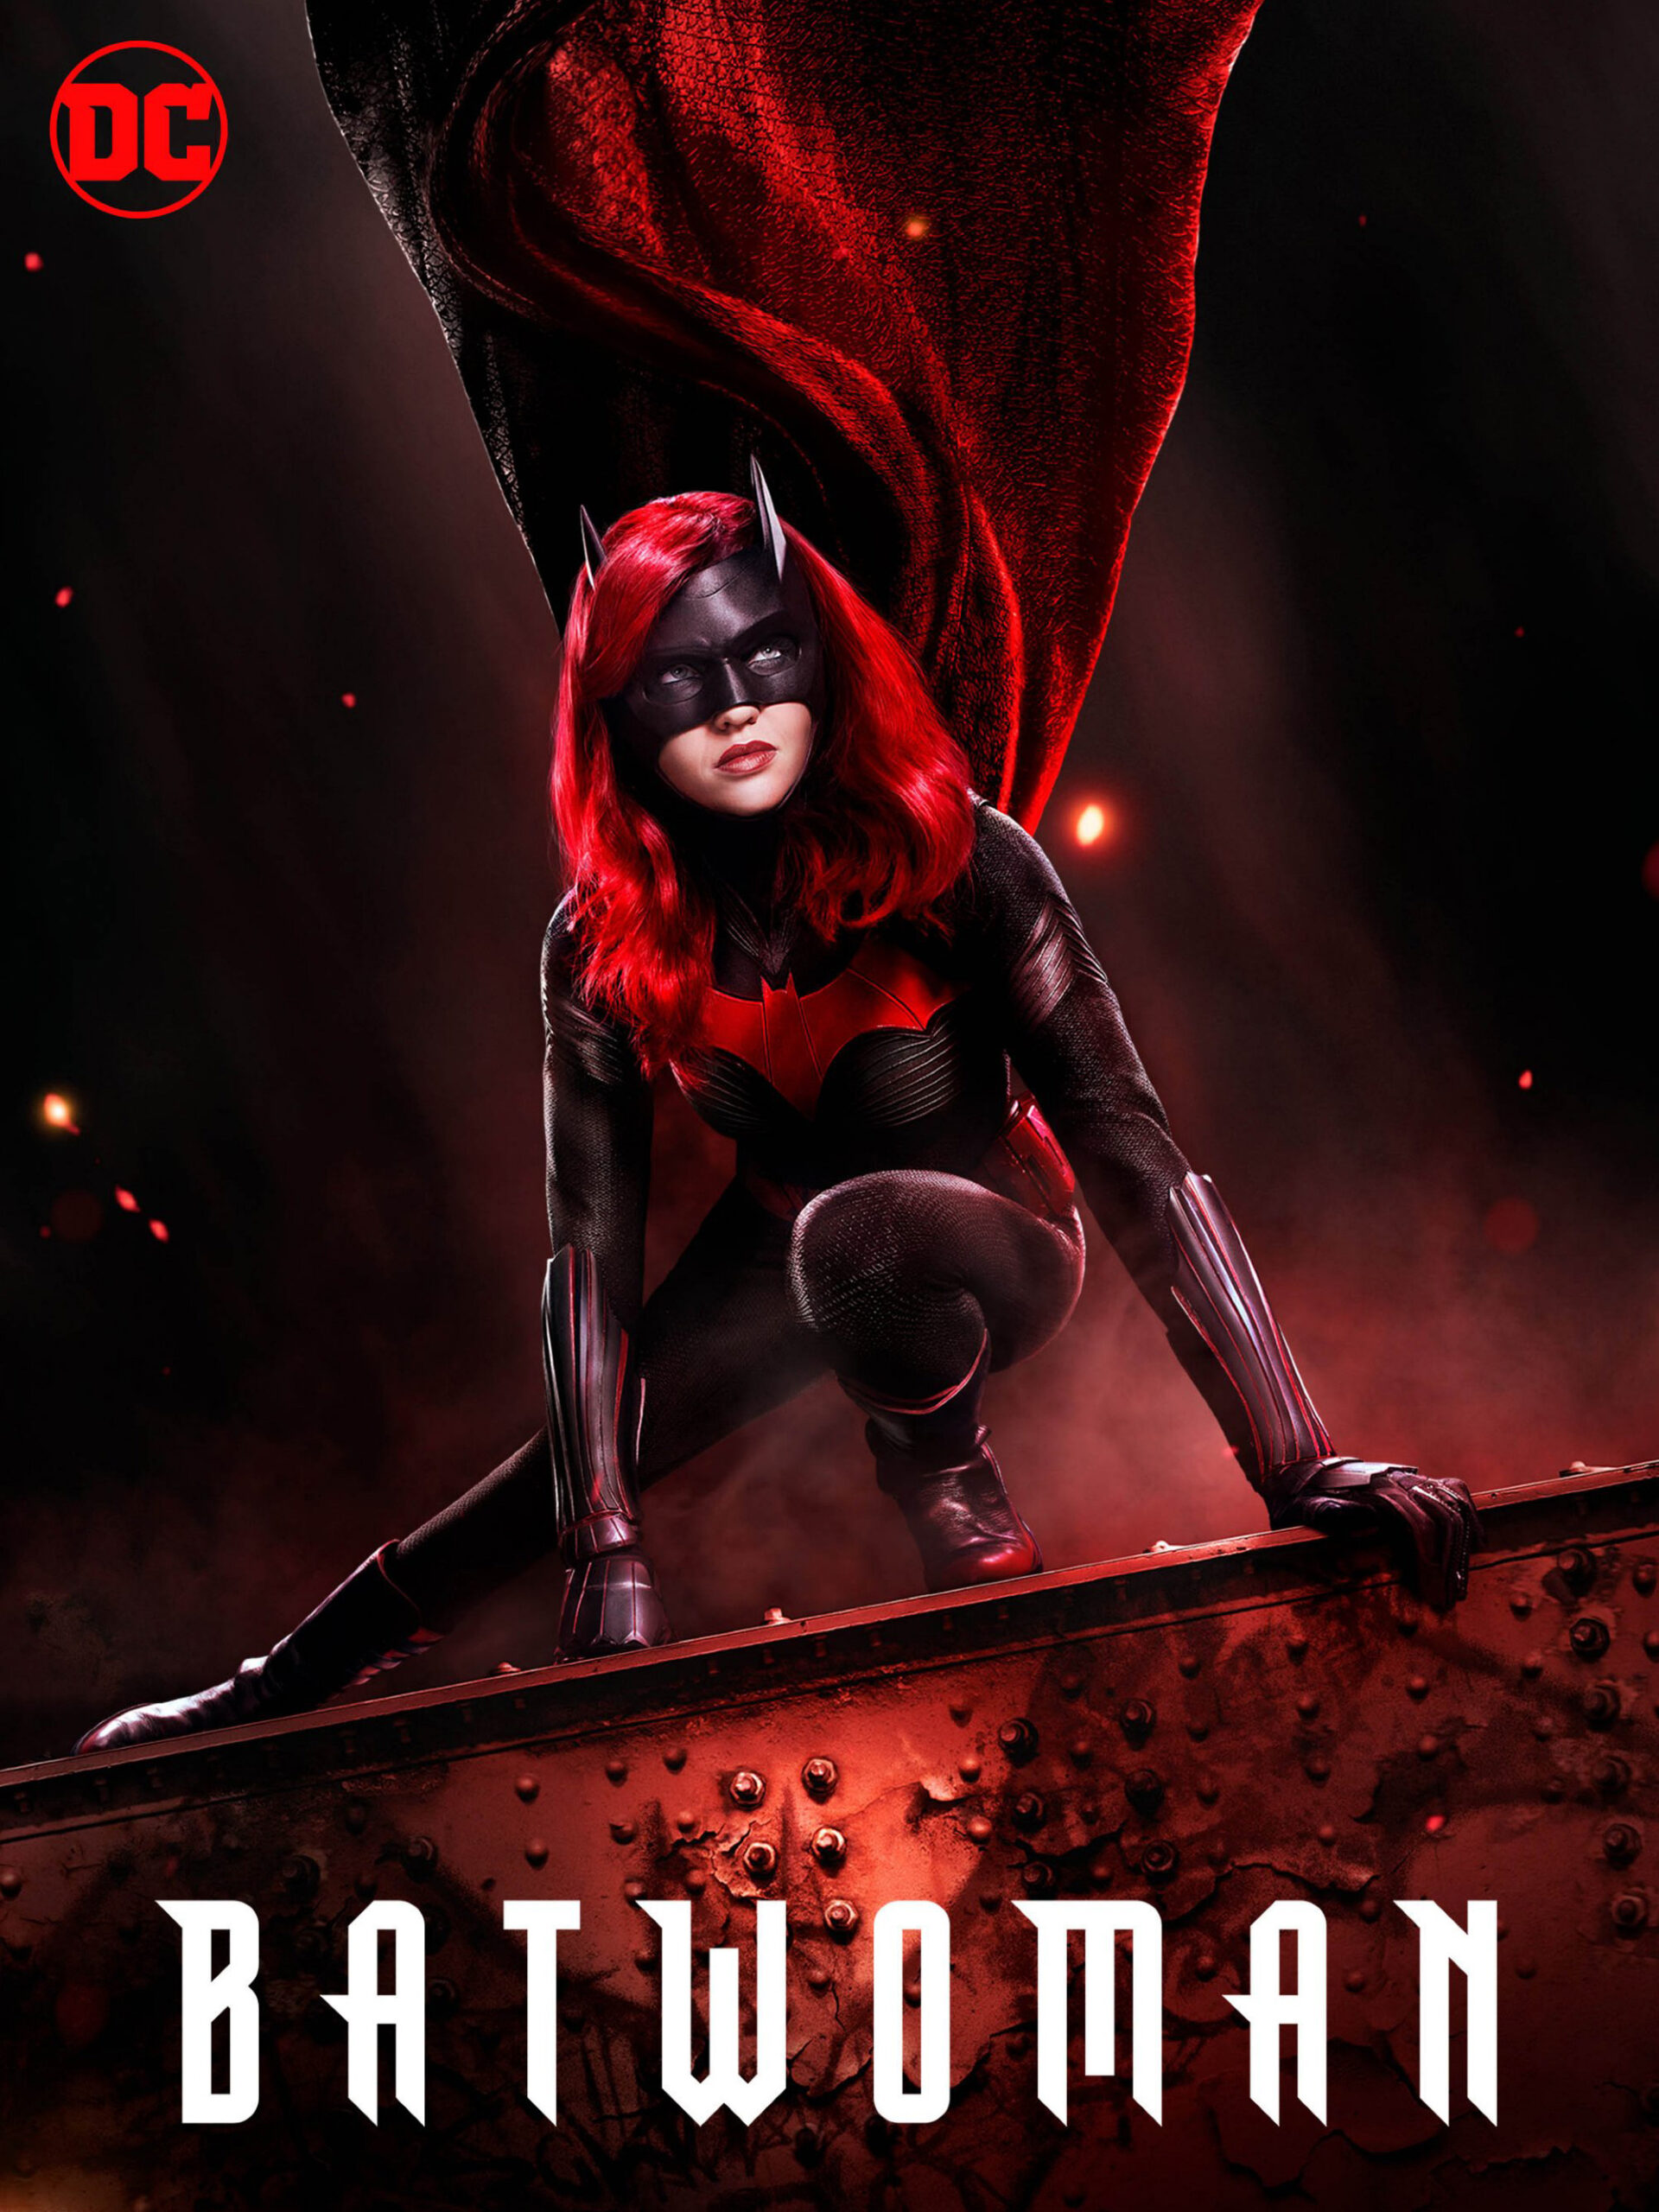 ดูหนังออนไลน์ฟรี Batwoman Season 1 (2019) EP.15 แบทวูแมน ซีซั่น 1 ตอนที่ 15 (Soundtrack)